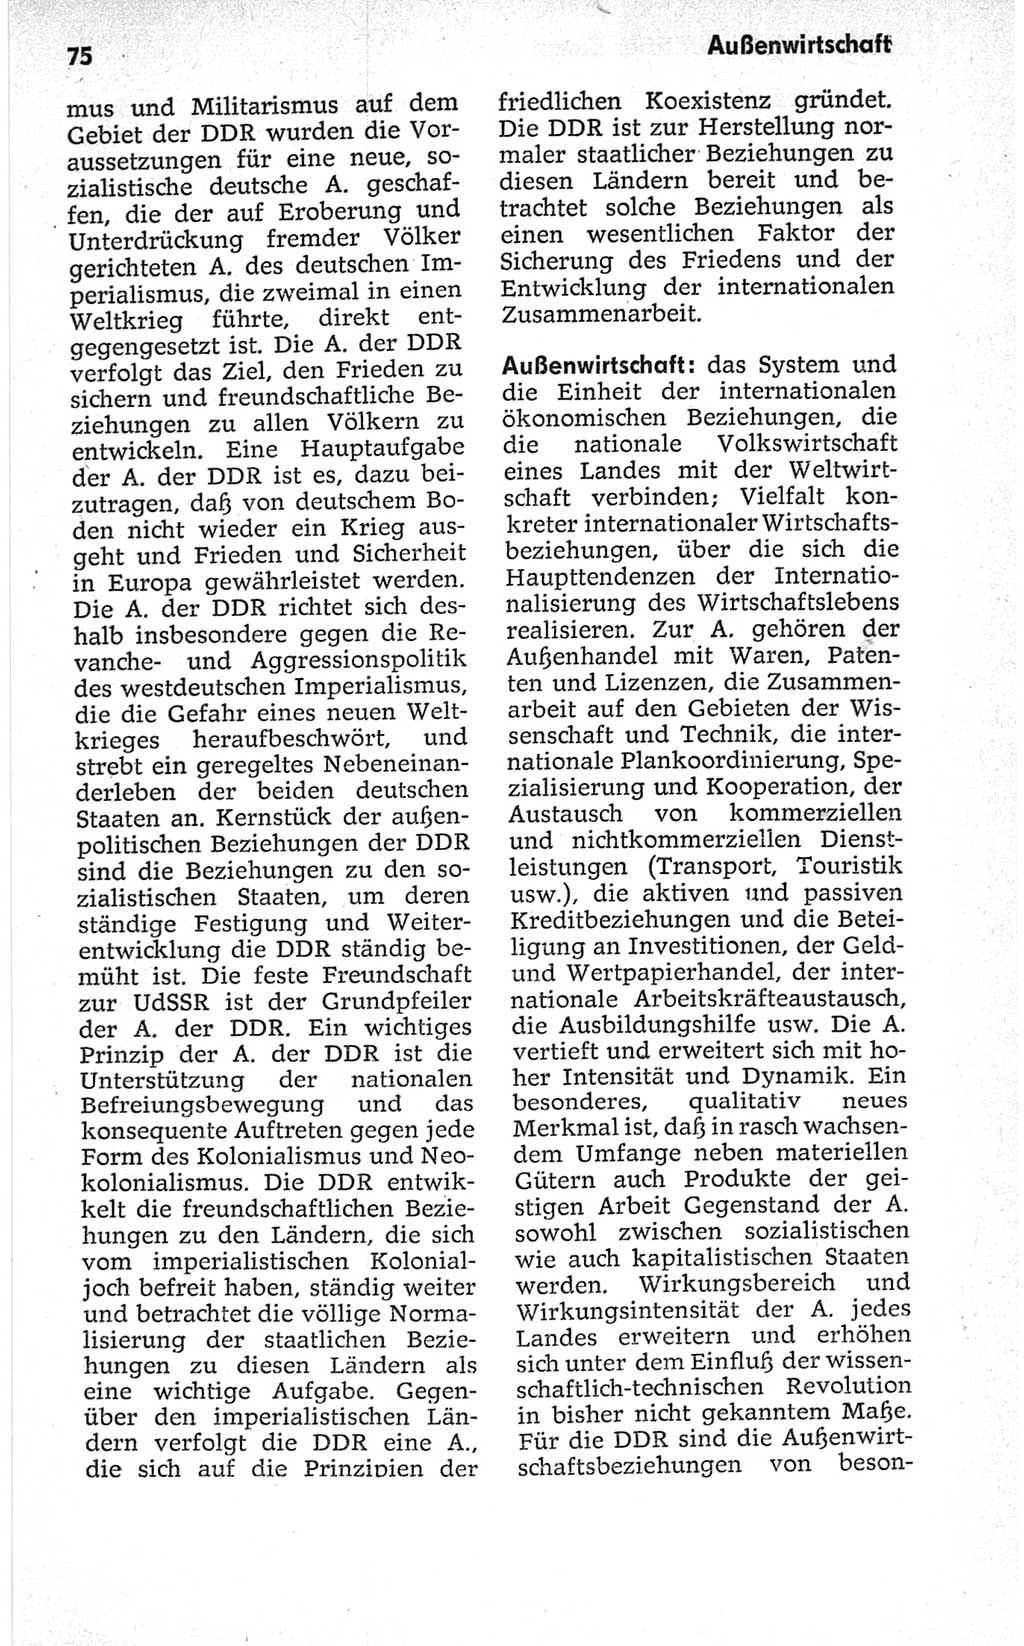 Kleines politisches Wörterbuch [Deutsche Demokratische Republik (DDR)] 1967, Seite 75 (Kl. pol. Wb. DDR 1967, S. 75)